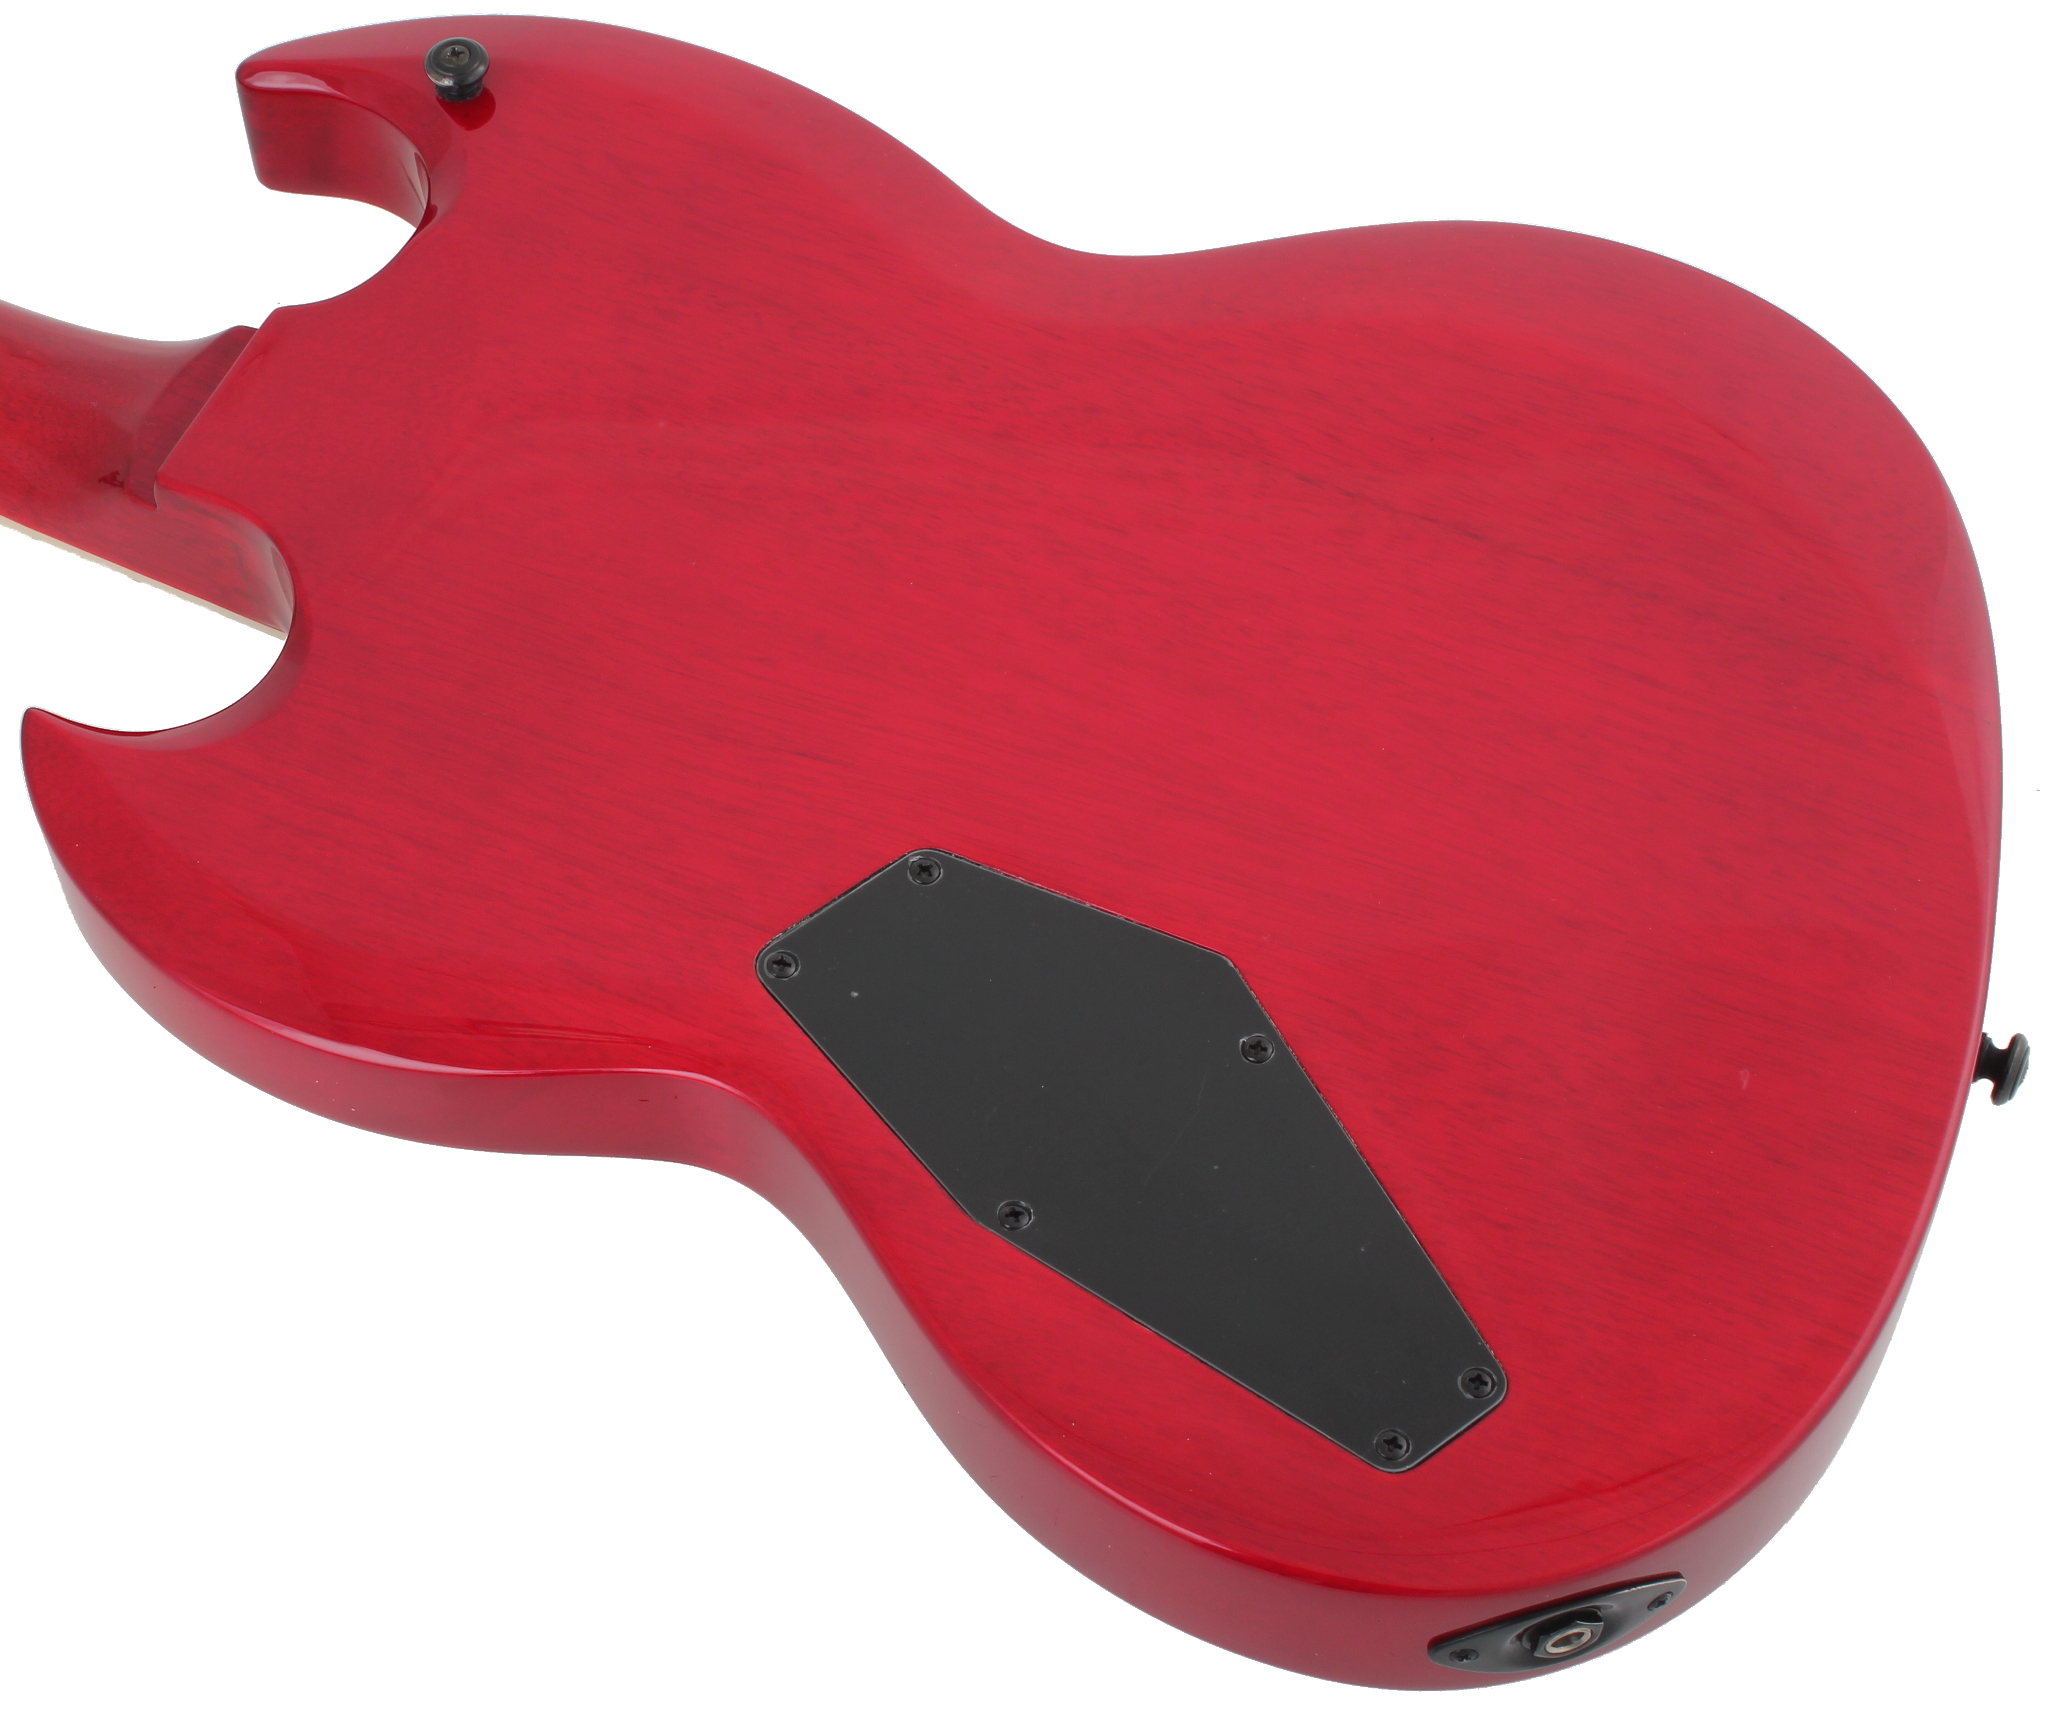 LTD VIPER-256 E-Gitarre STBC